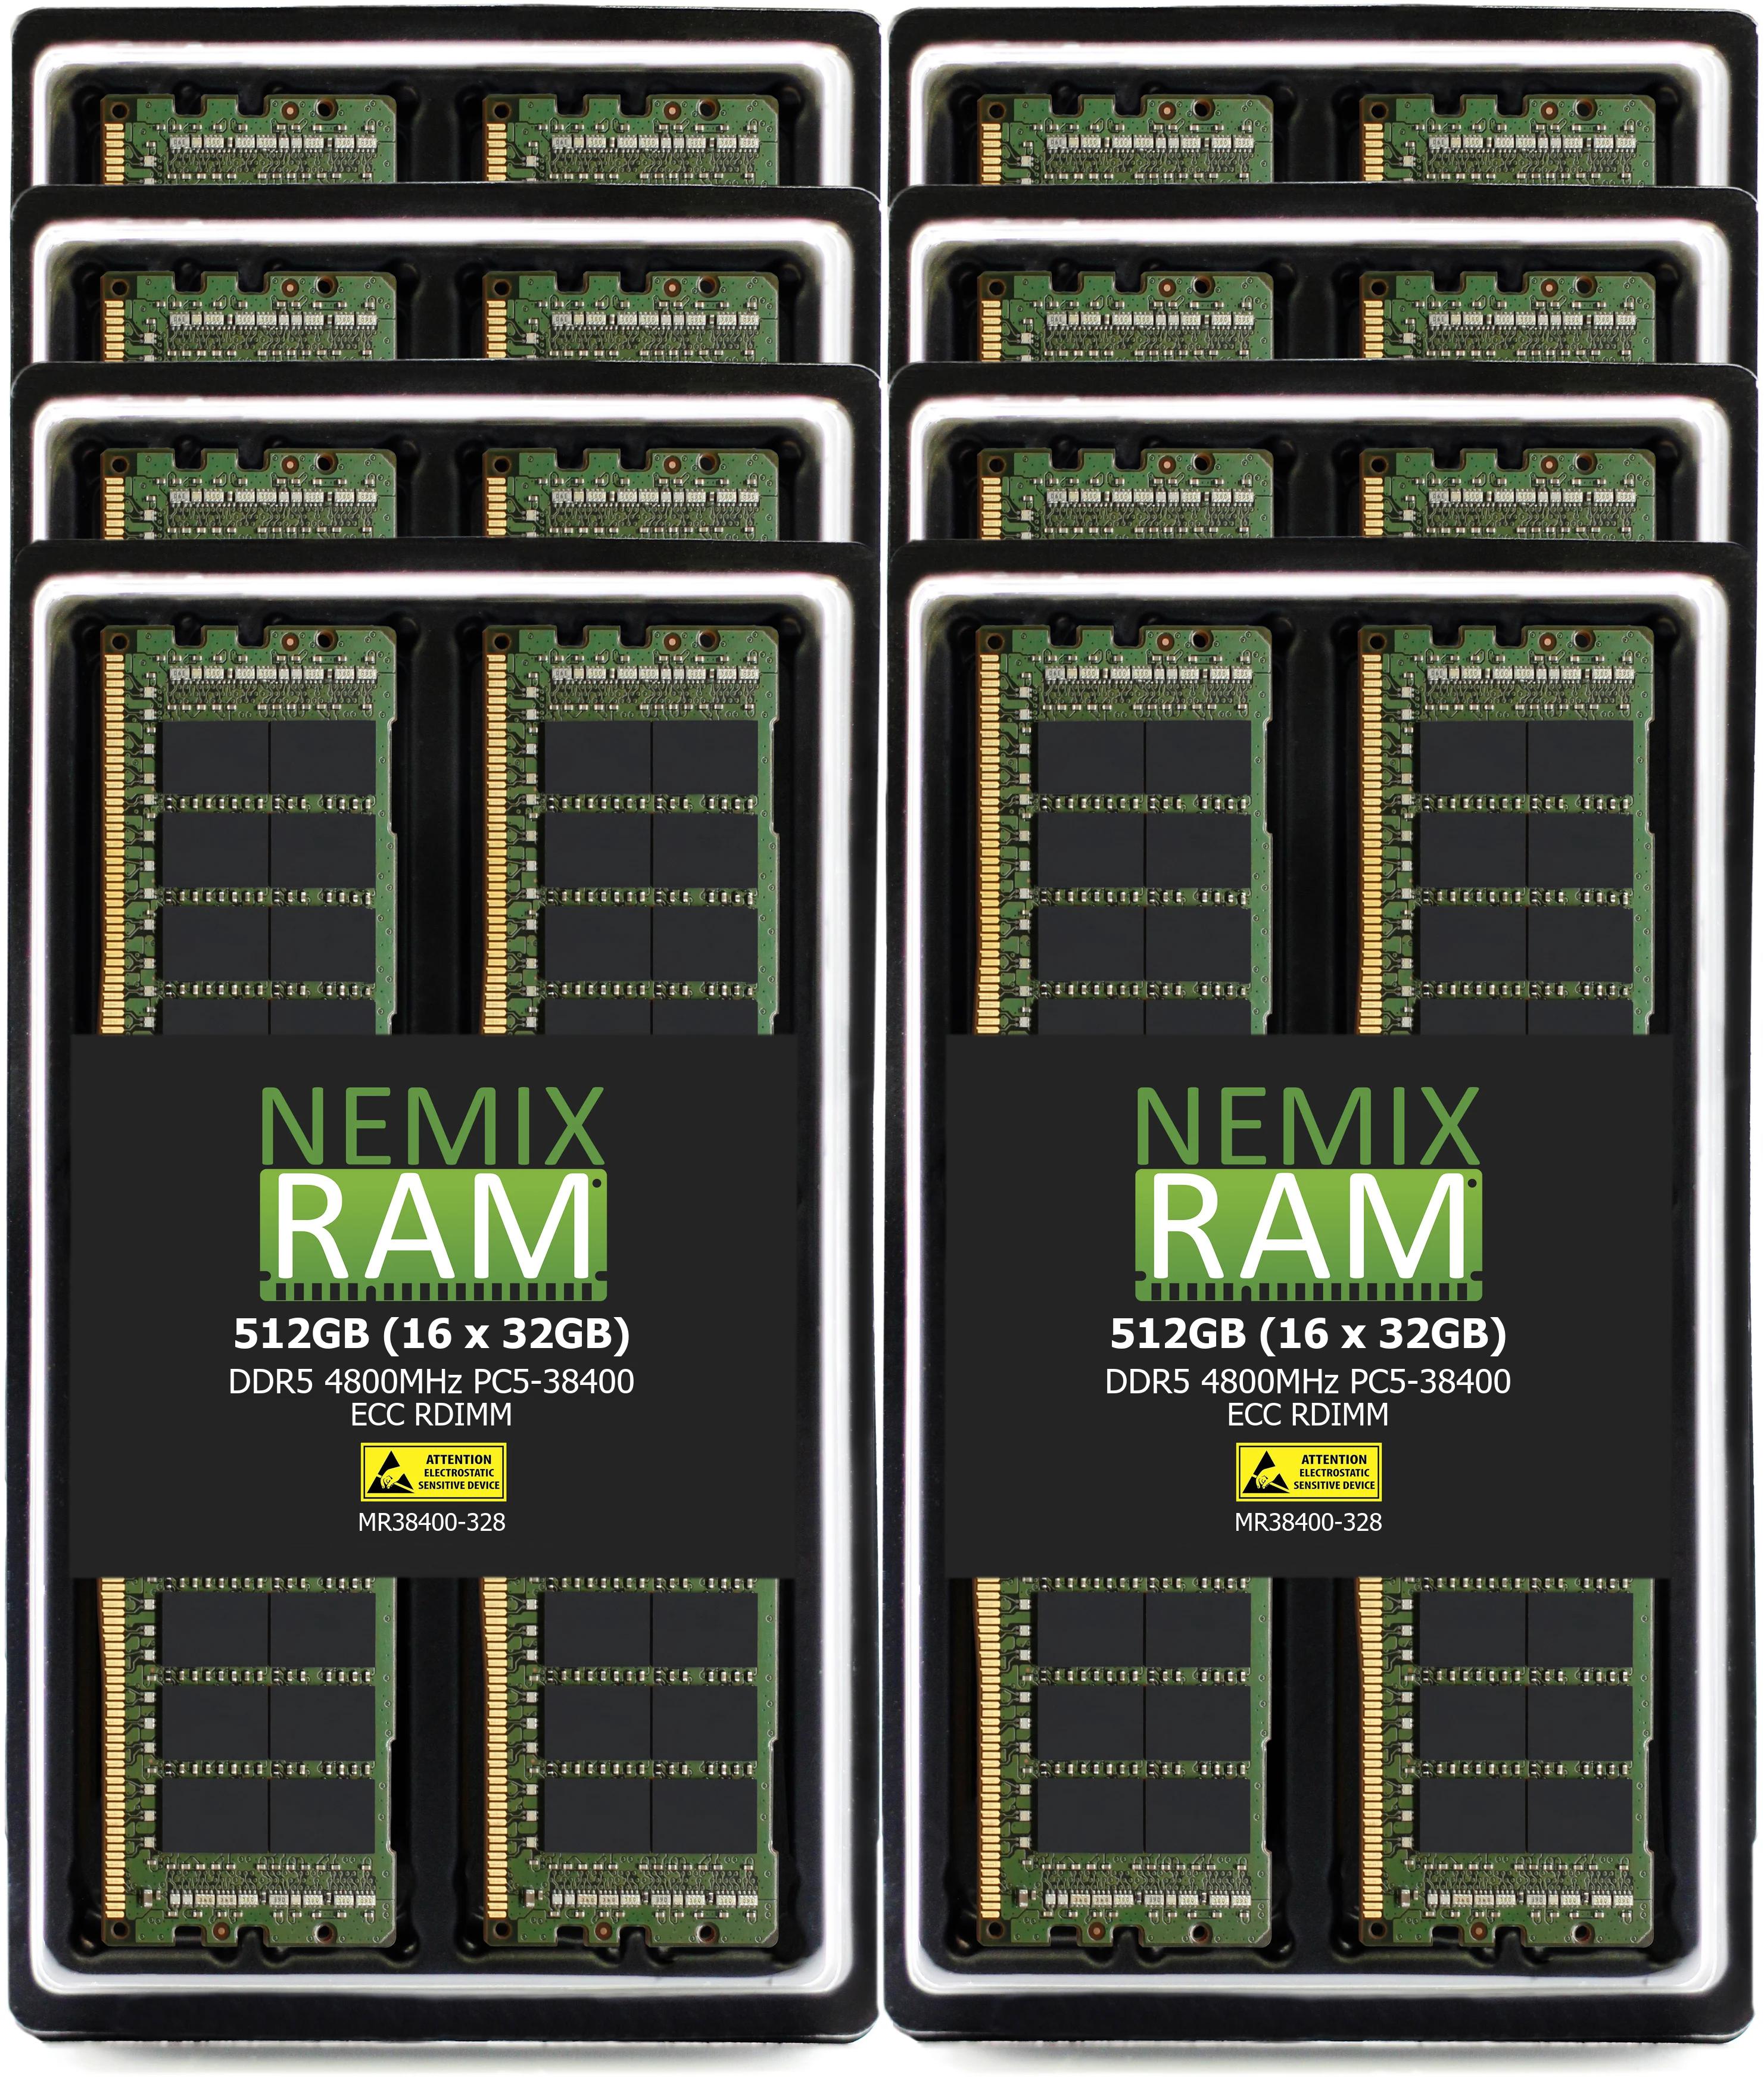 THINKMATE - RAX-XS4-21S4|RAX-XS4-21S4|RAX-XH8-21S4|RAX-XH12-21S4|RAX-XH12-22S4|RAX-XH24-22S4|RAX-XT24-22S4 Rackmount Servers Memory Upgrade